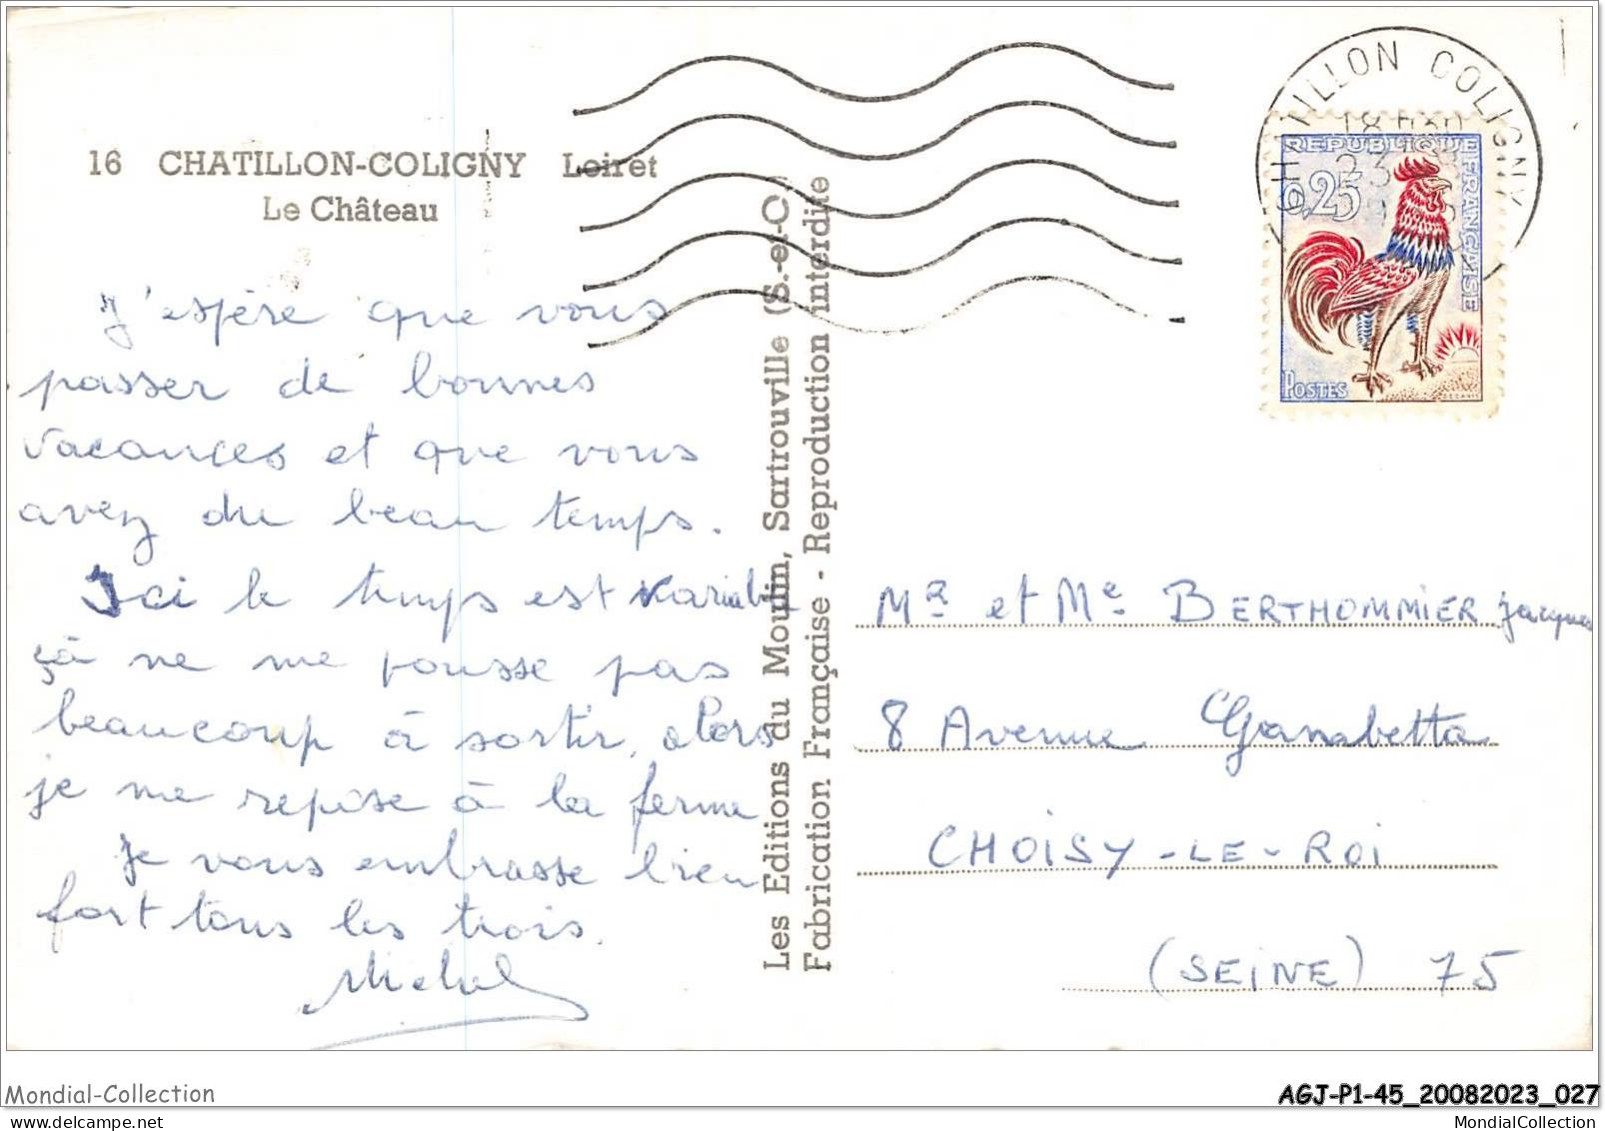 AGJP1-0014-45 - CHATILLON-COLIGNY - Loiret - Le Château  - Chatillon Coligny